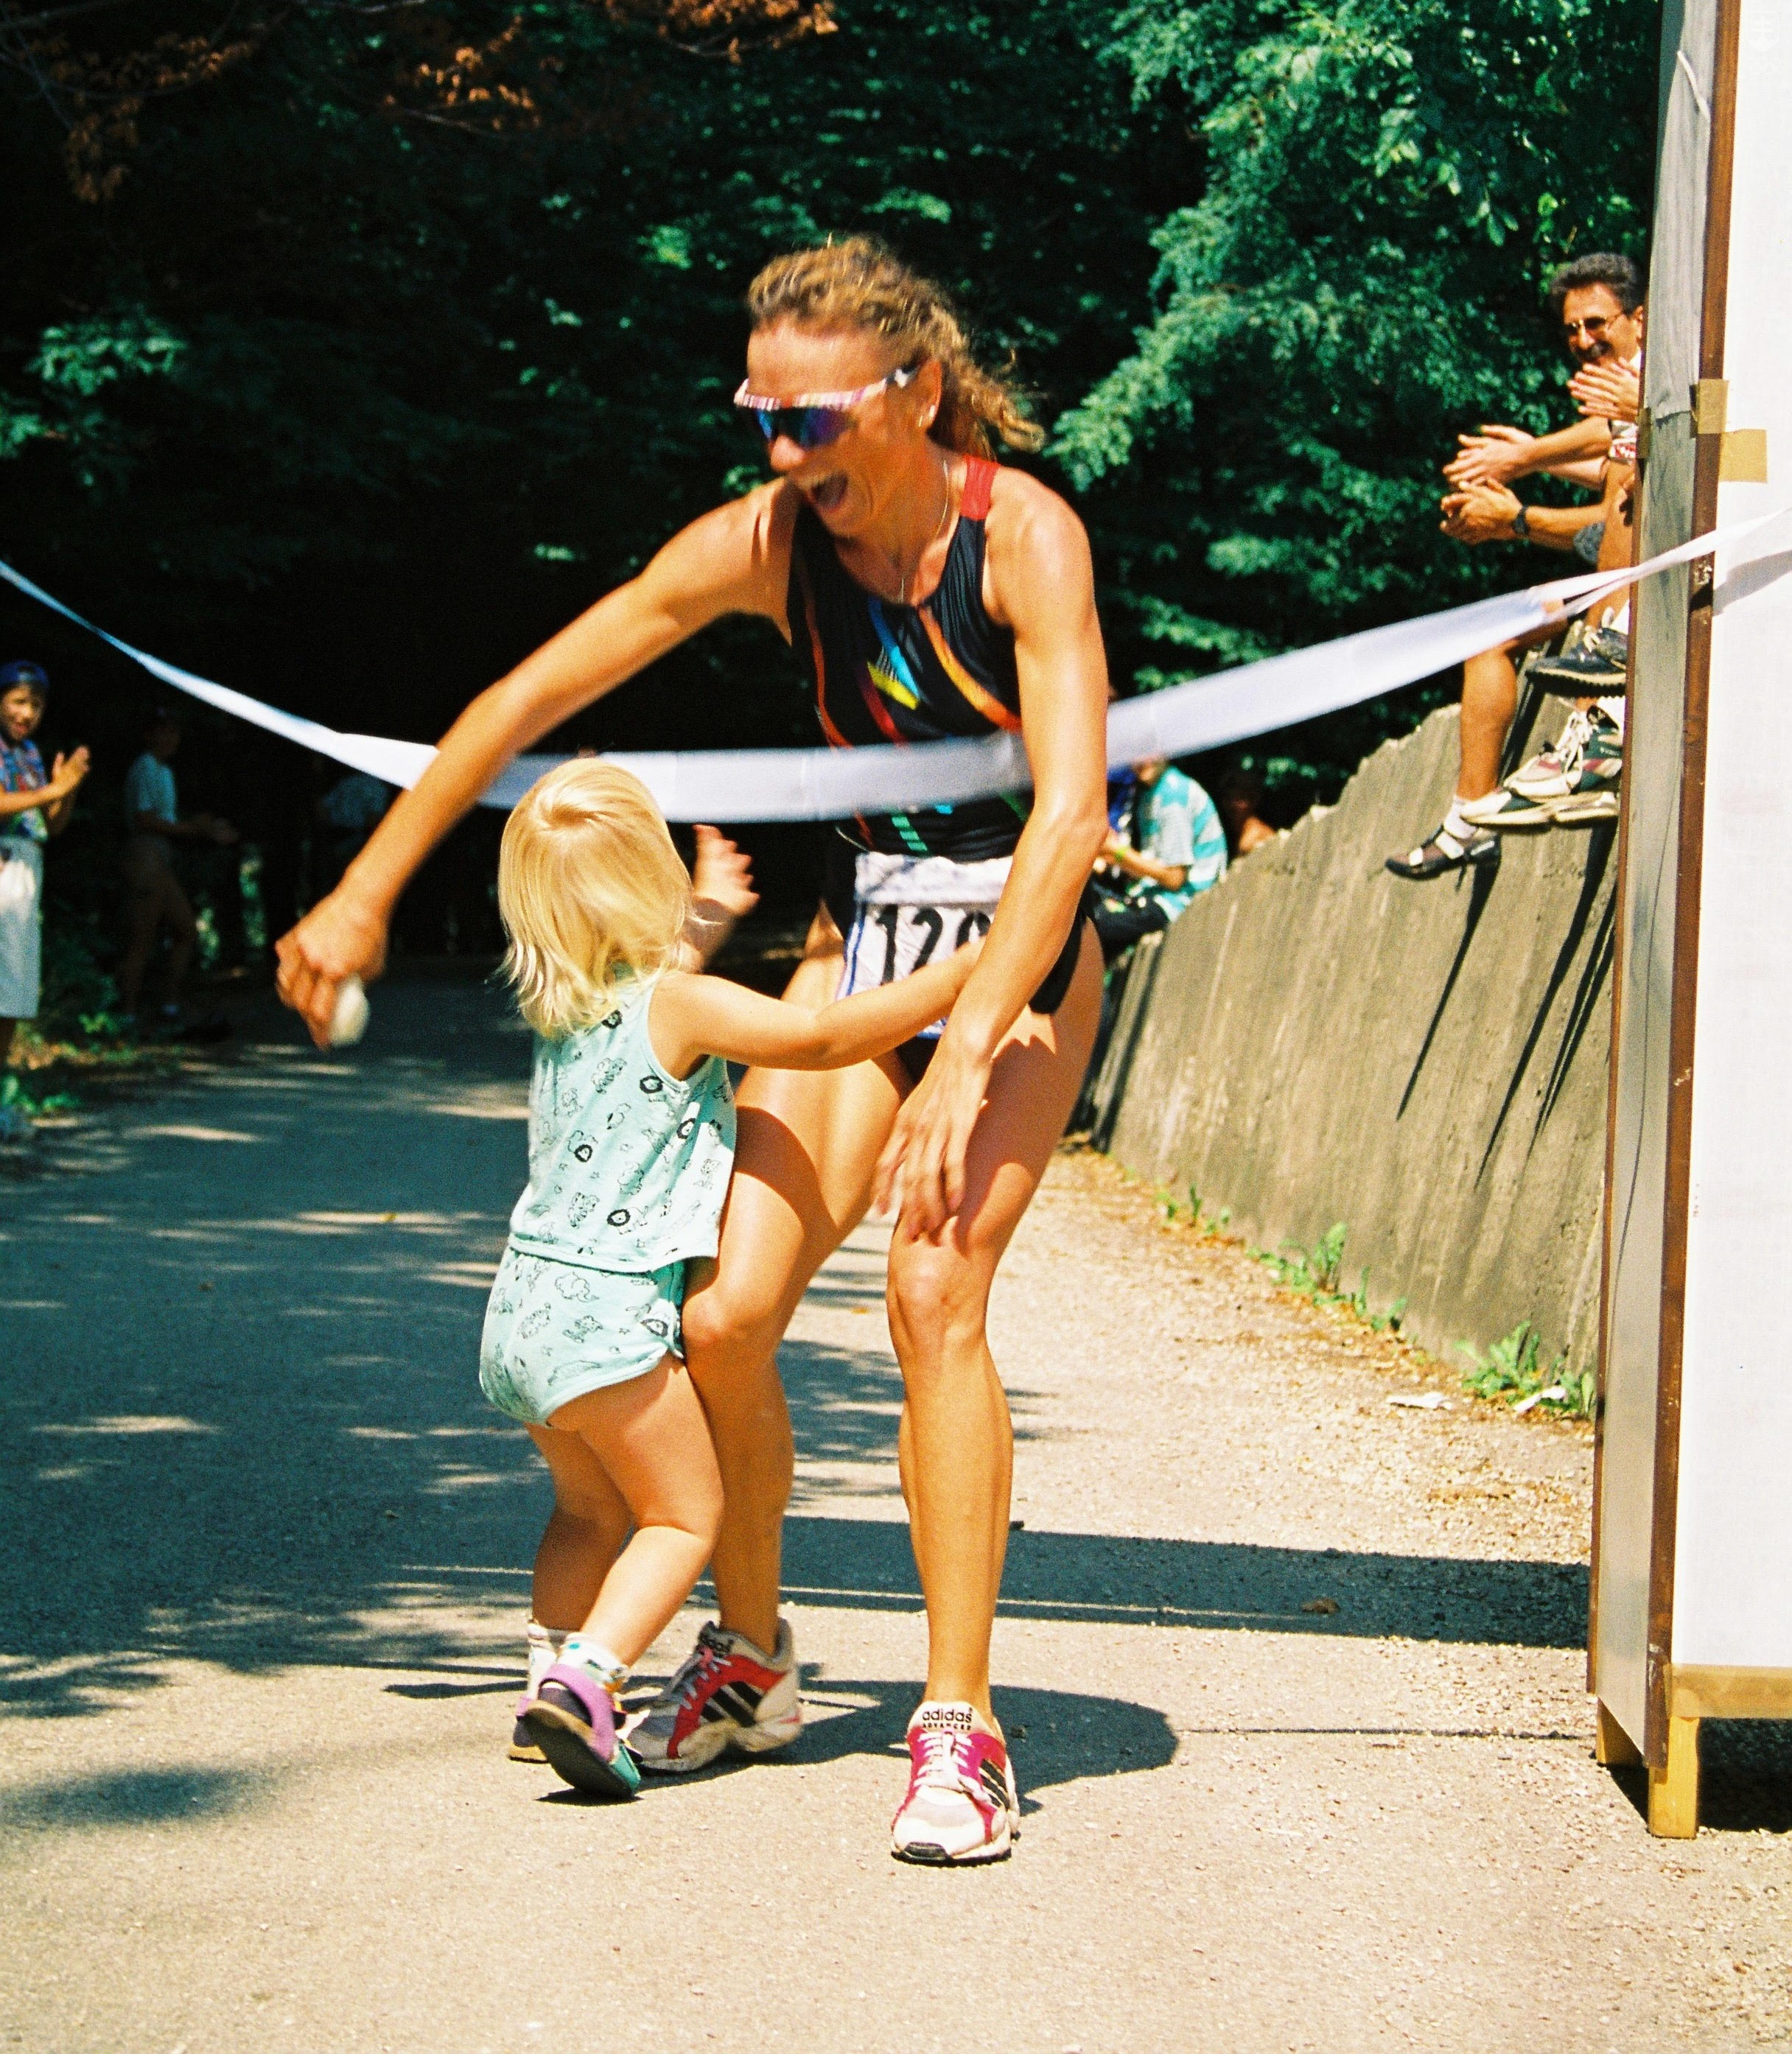 Mária Kuriačková v roku 1997 beží do cieľa pre titul majsterky SR olympijskom triatlone v Starej Turej. V cieli ju víta dcéra Ivana, ktorá mala vtedy 3 roky.